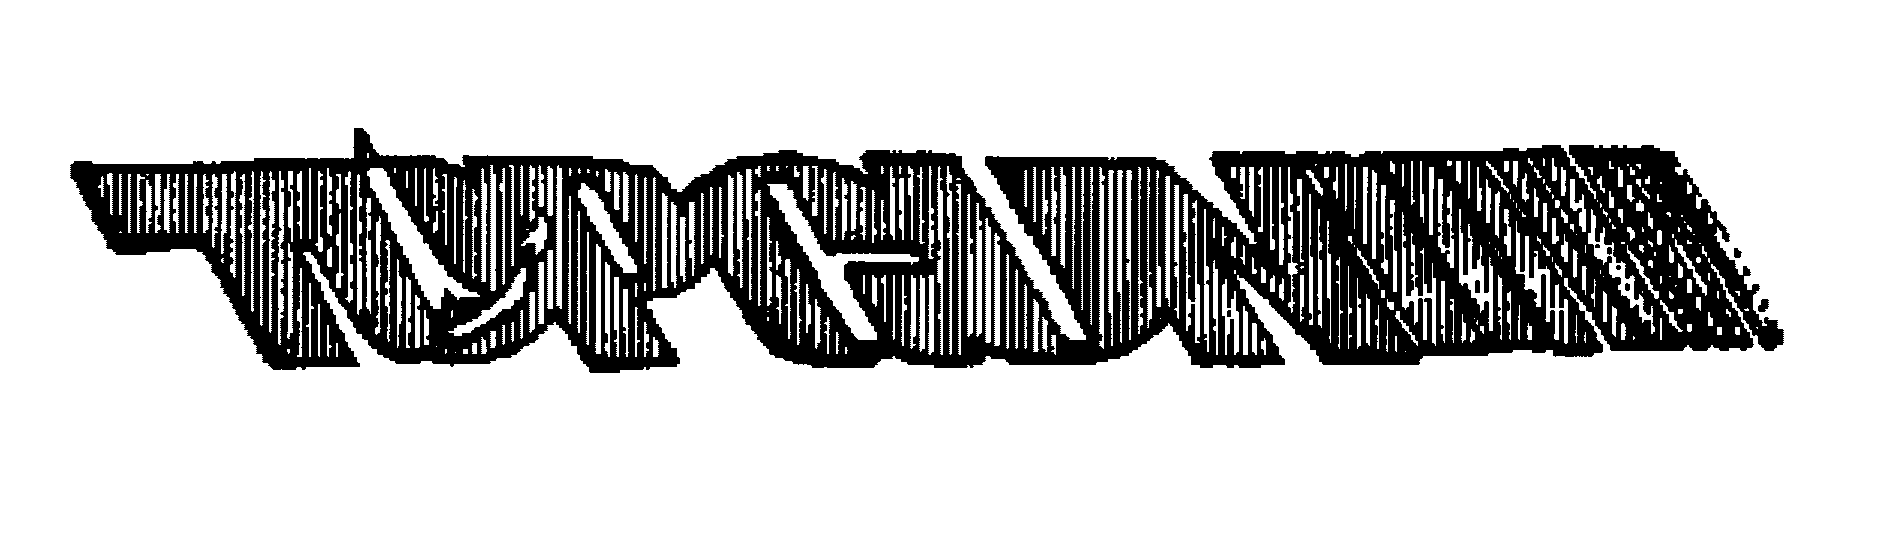 Trademark Logo TOPGUN